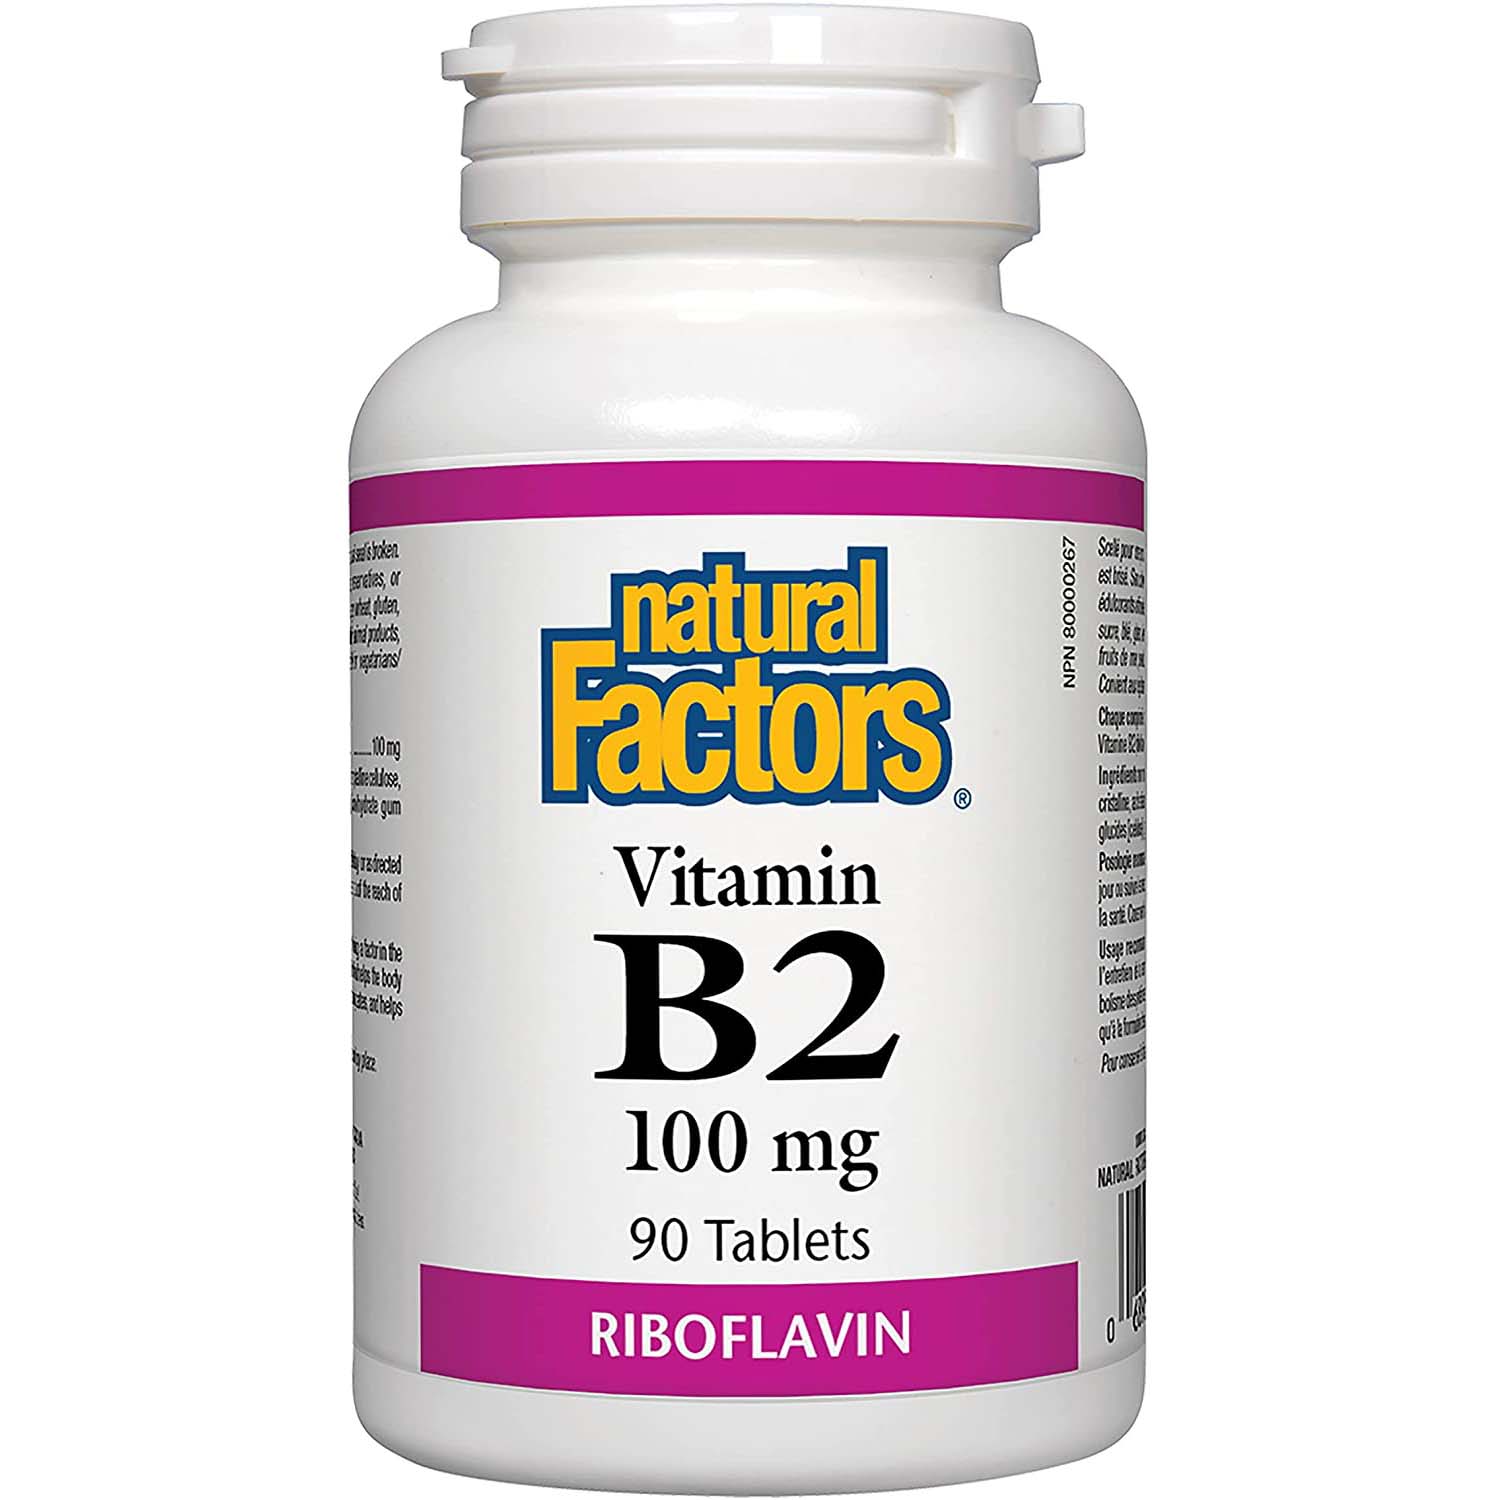 ناتشورال فاكتورز فيتامين ب 2 ريبوفلافين, 100 ملجم, 90 حبة